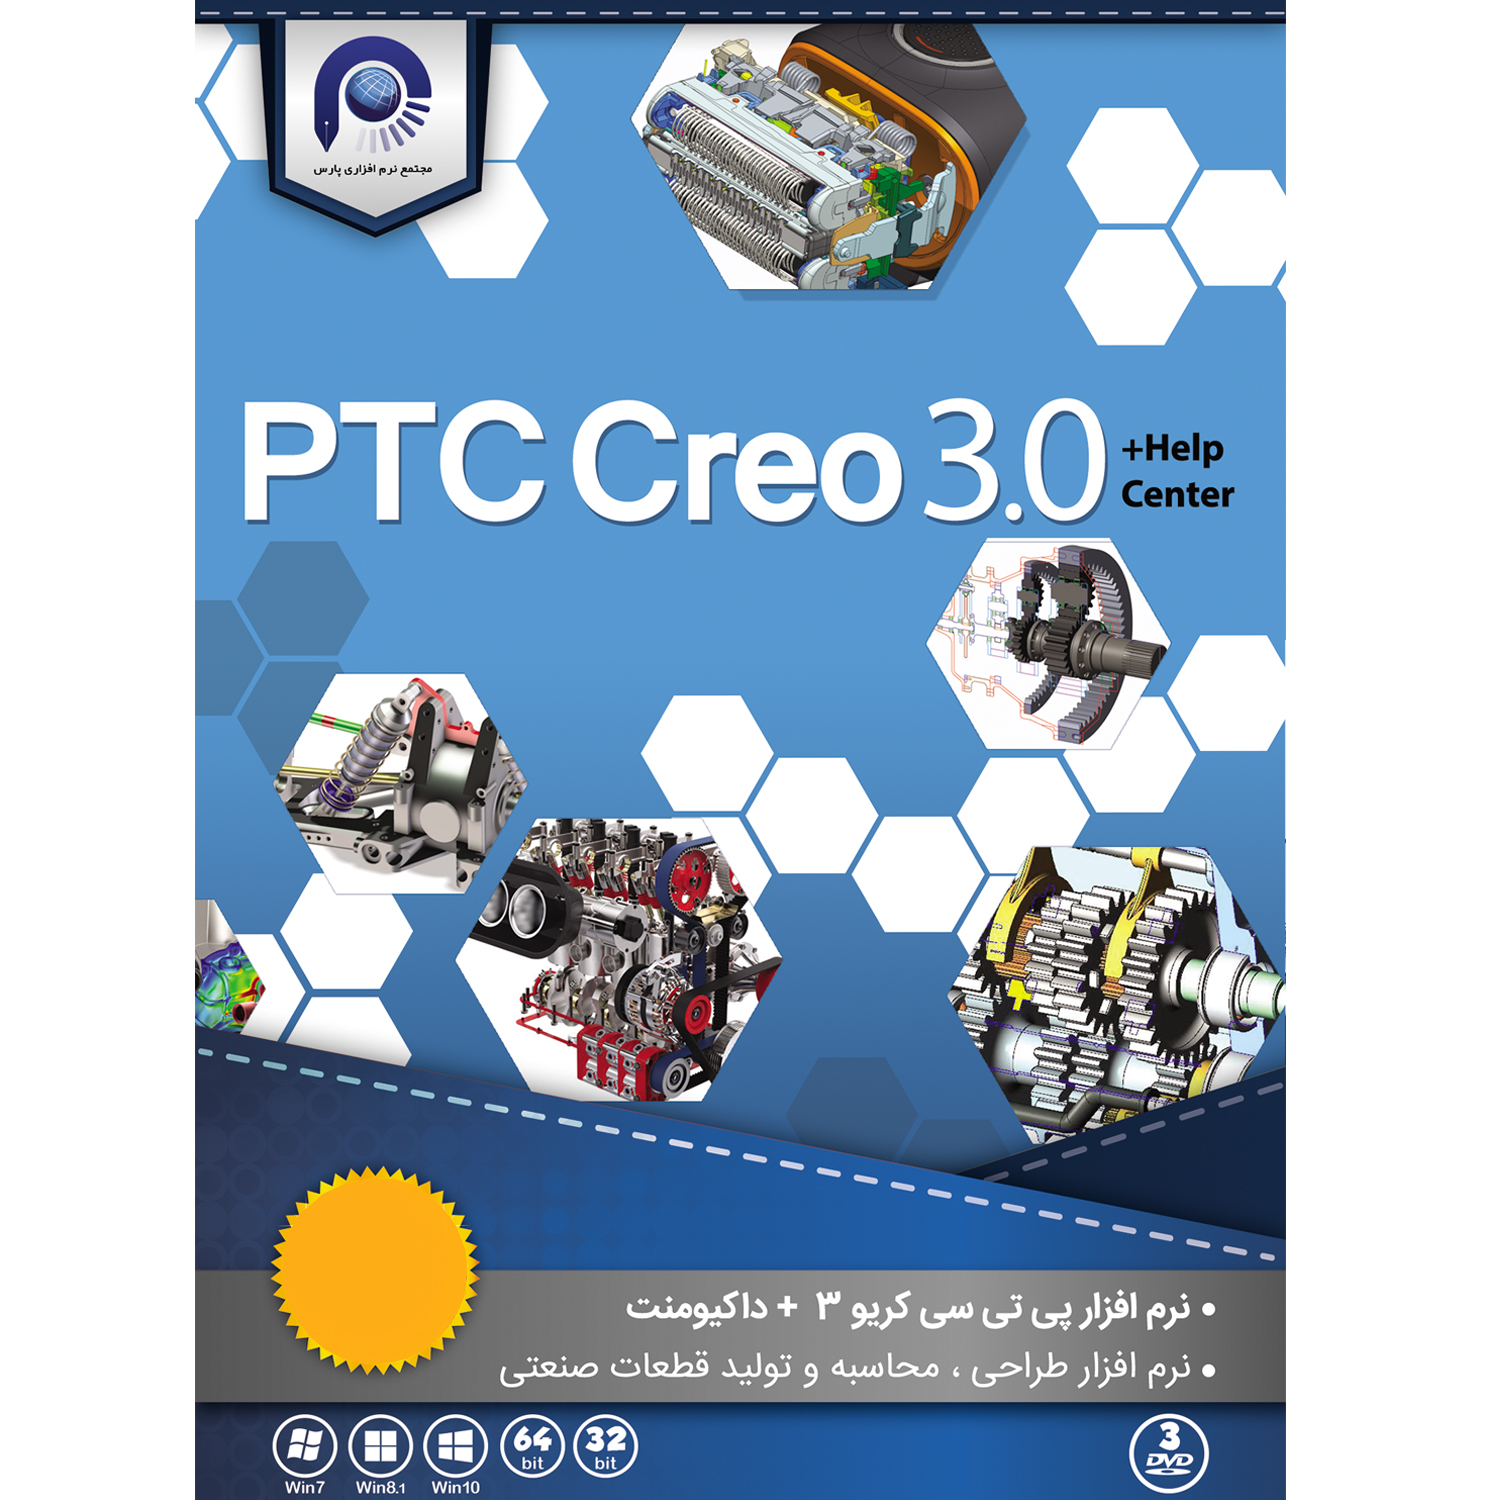 نرم افزار PTC Creo 3.0 + Helpcenter نشر مجتمع نرم افزاری پارس